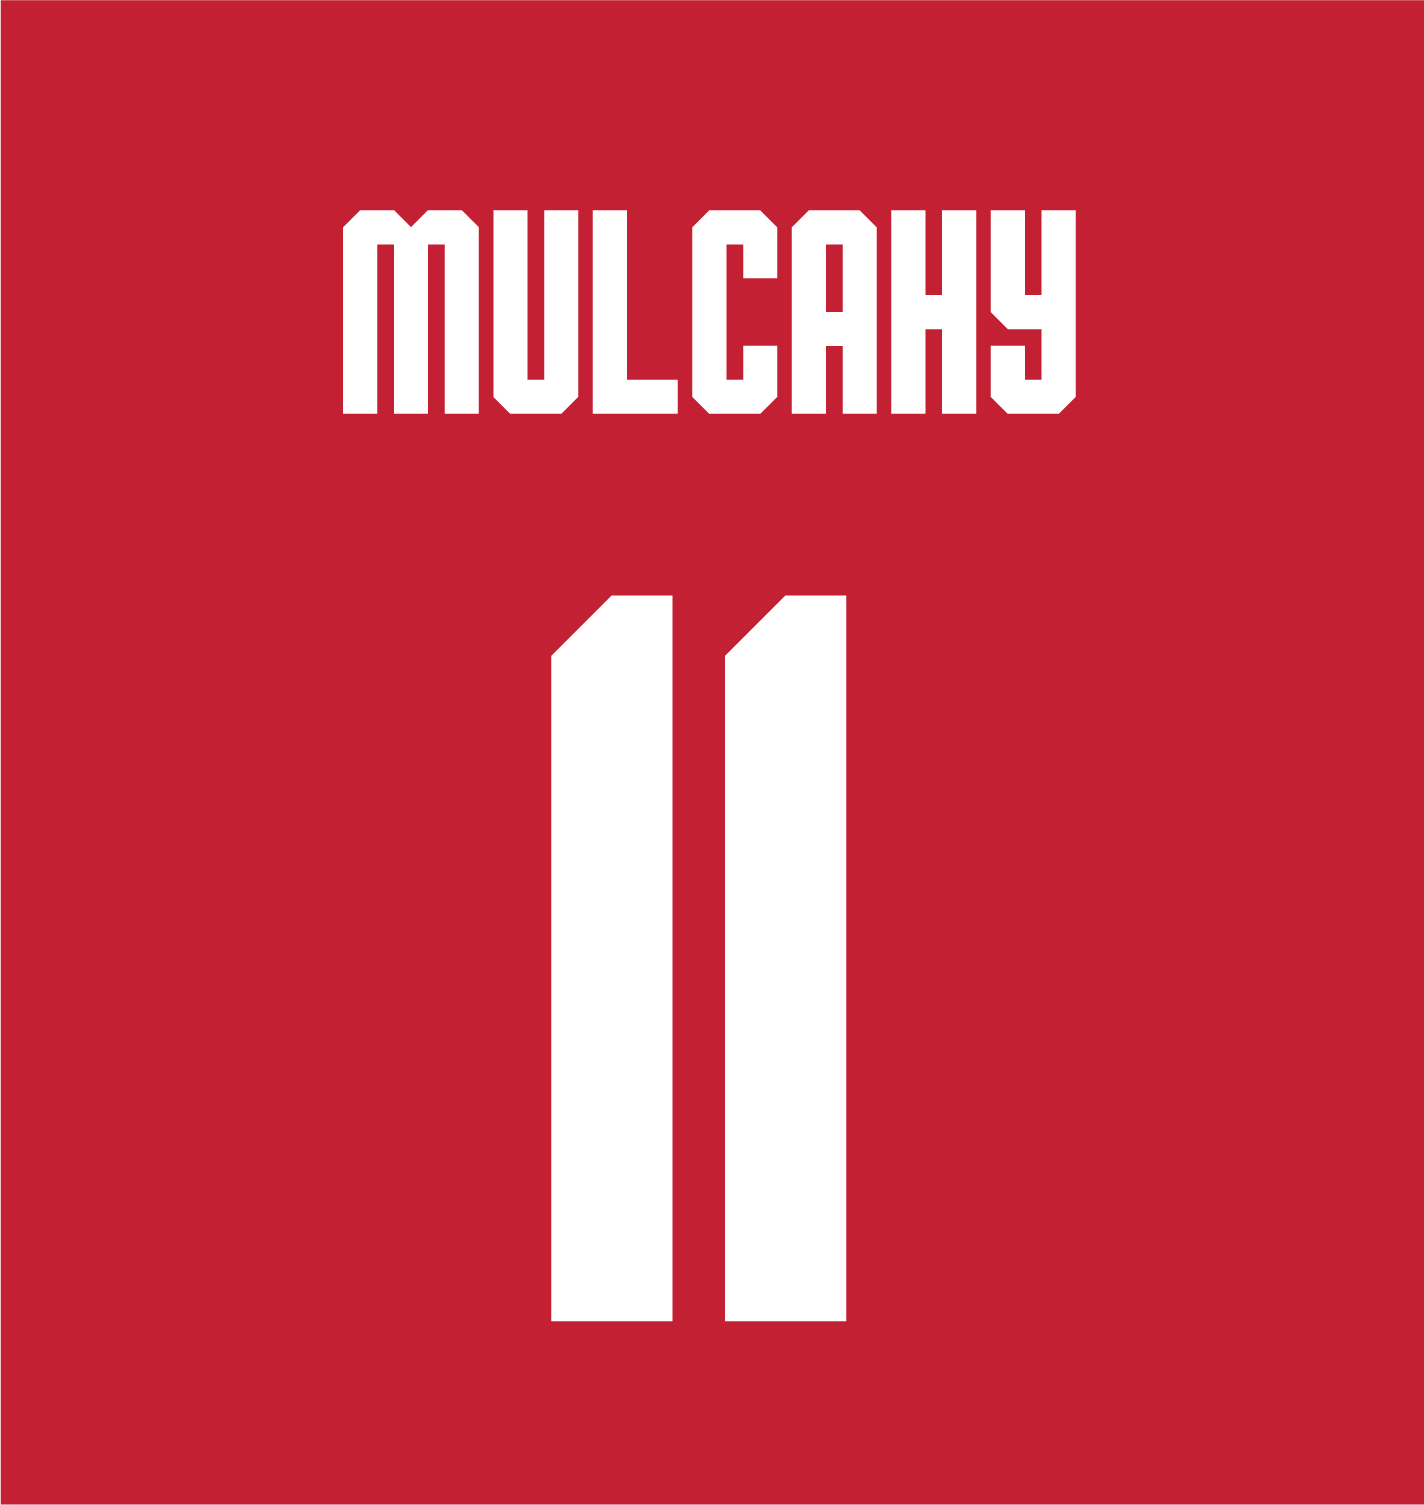 Drew Mulcahy | #11